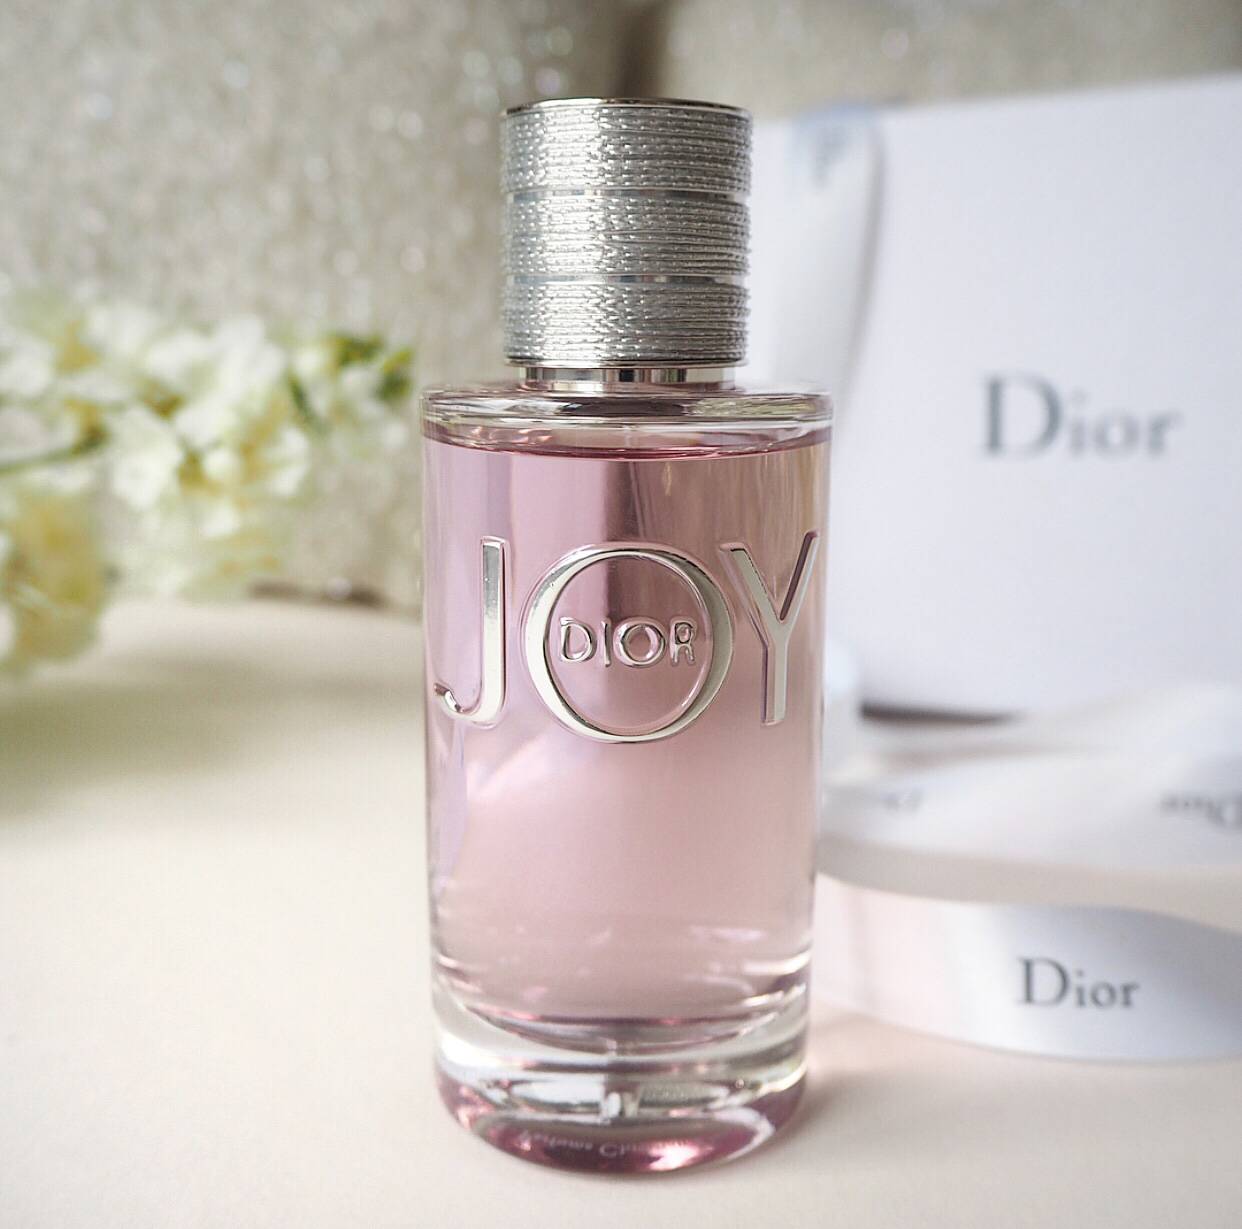 dior joy perfume duty free, OFF 73%,Buy!